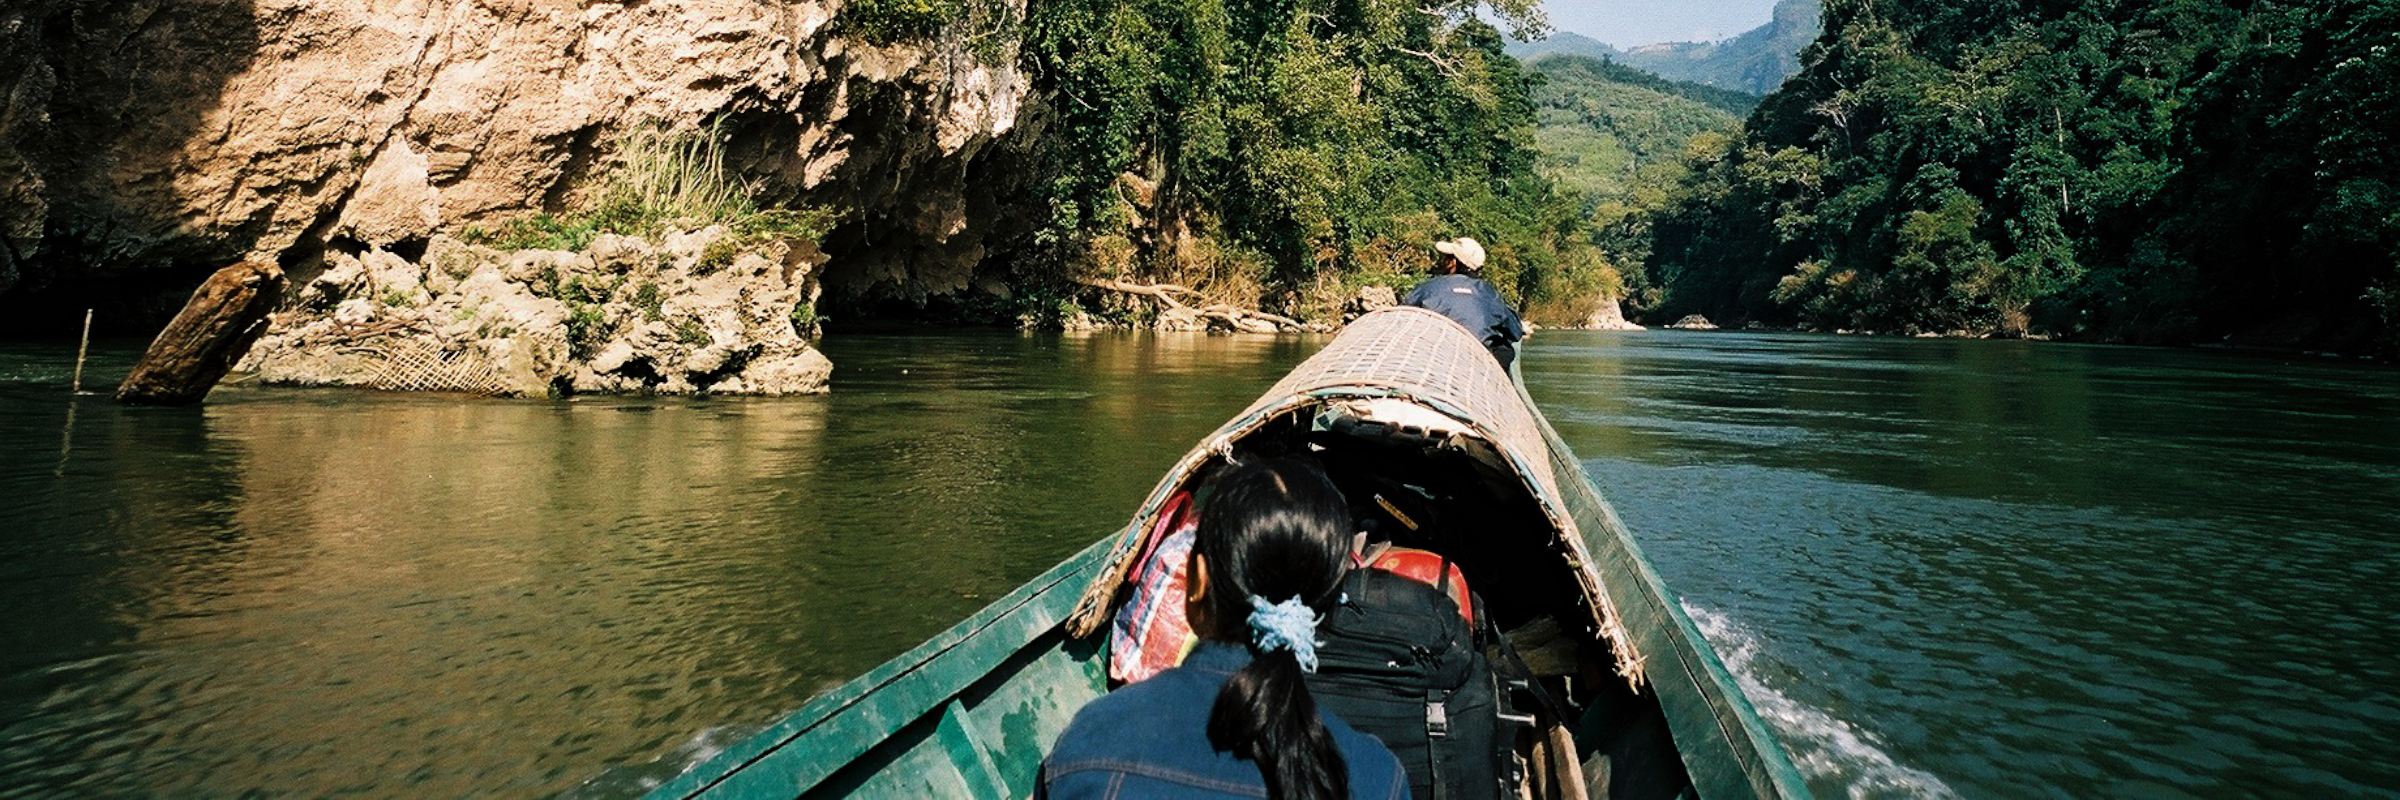 Zwei Einheimische fahren mit einem landestypischen Boot durch eine idyllische Flusslandschaft im Norden von Laos.